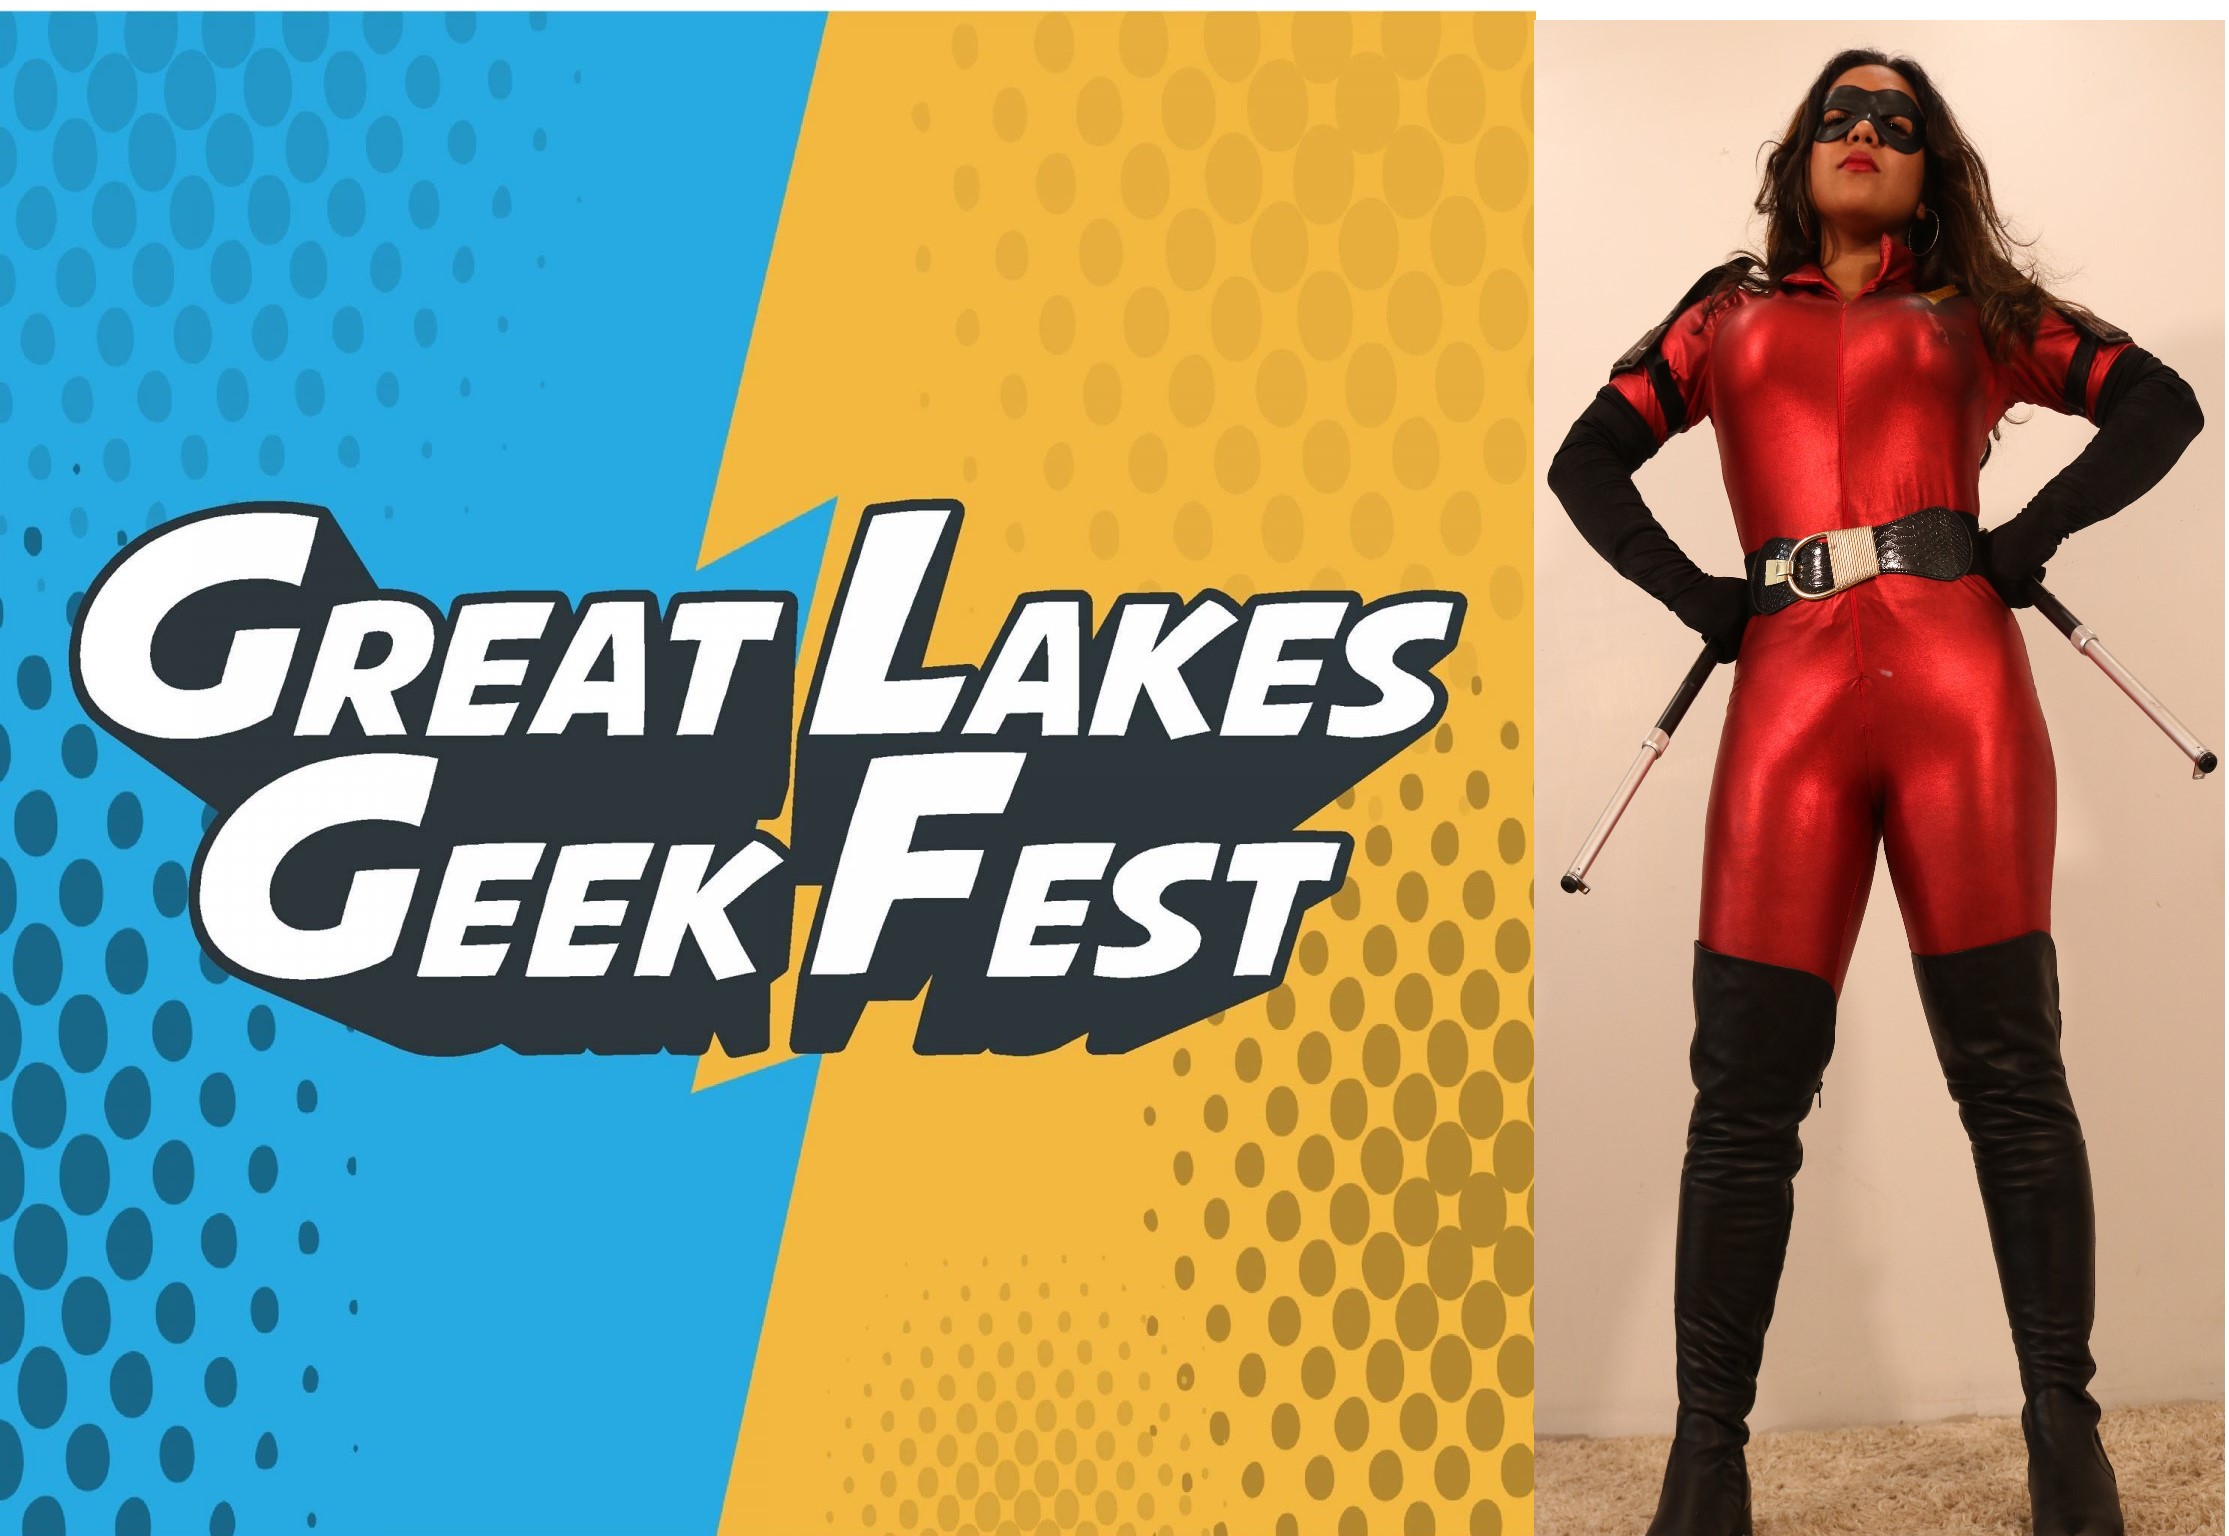 Great-Lakes-Geek-Fest-1536x1536.jpg